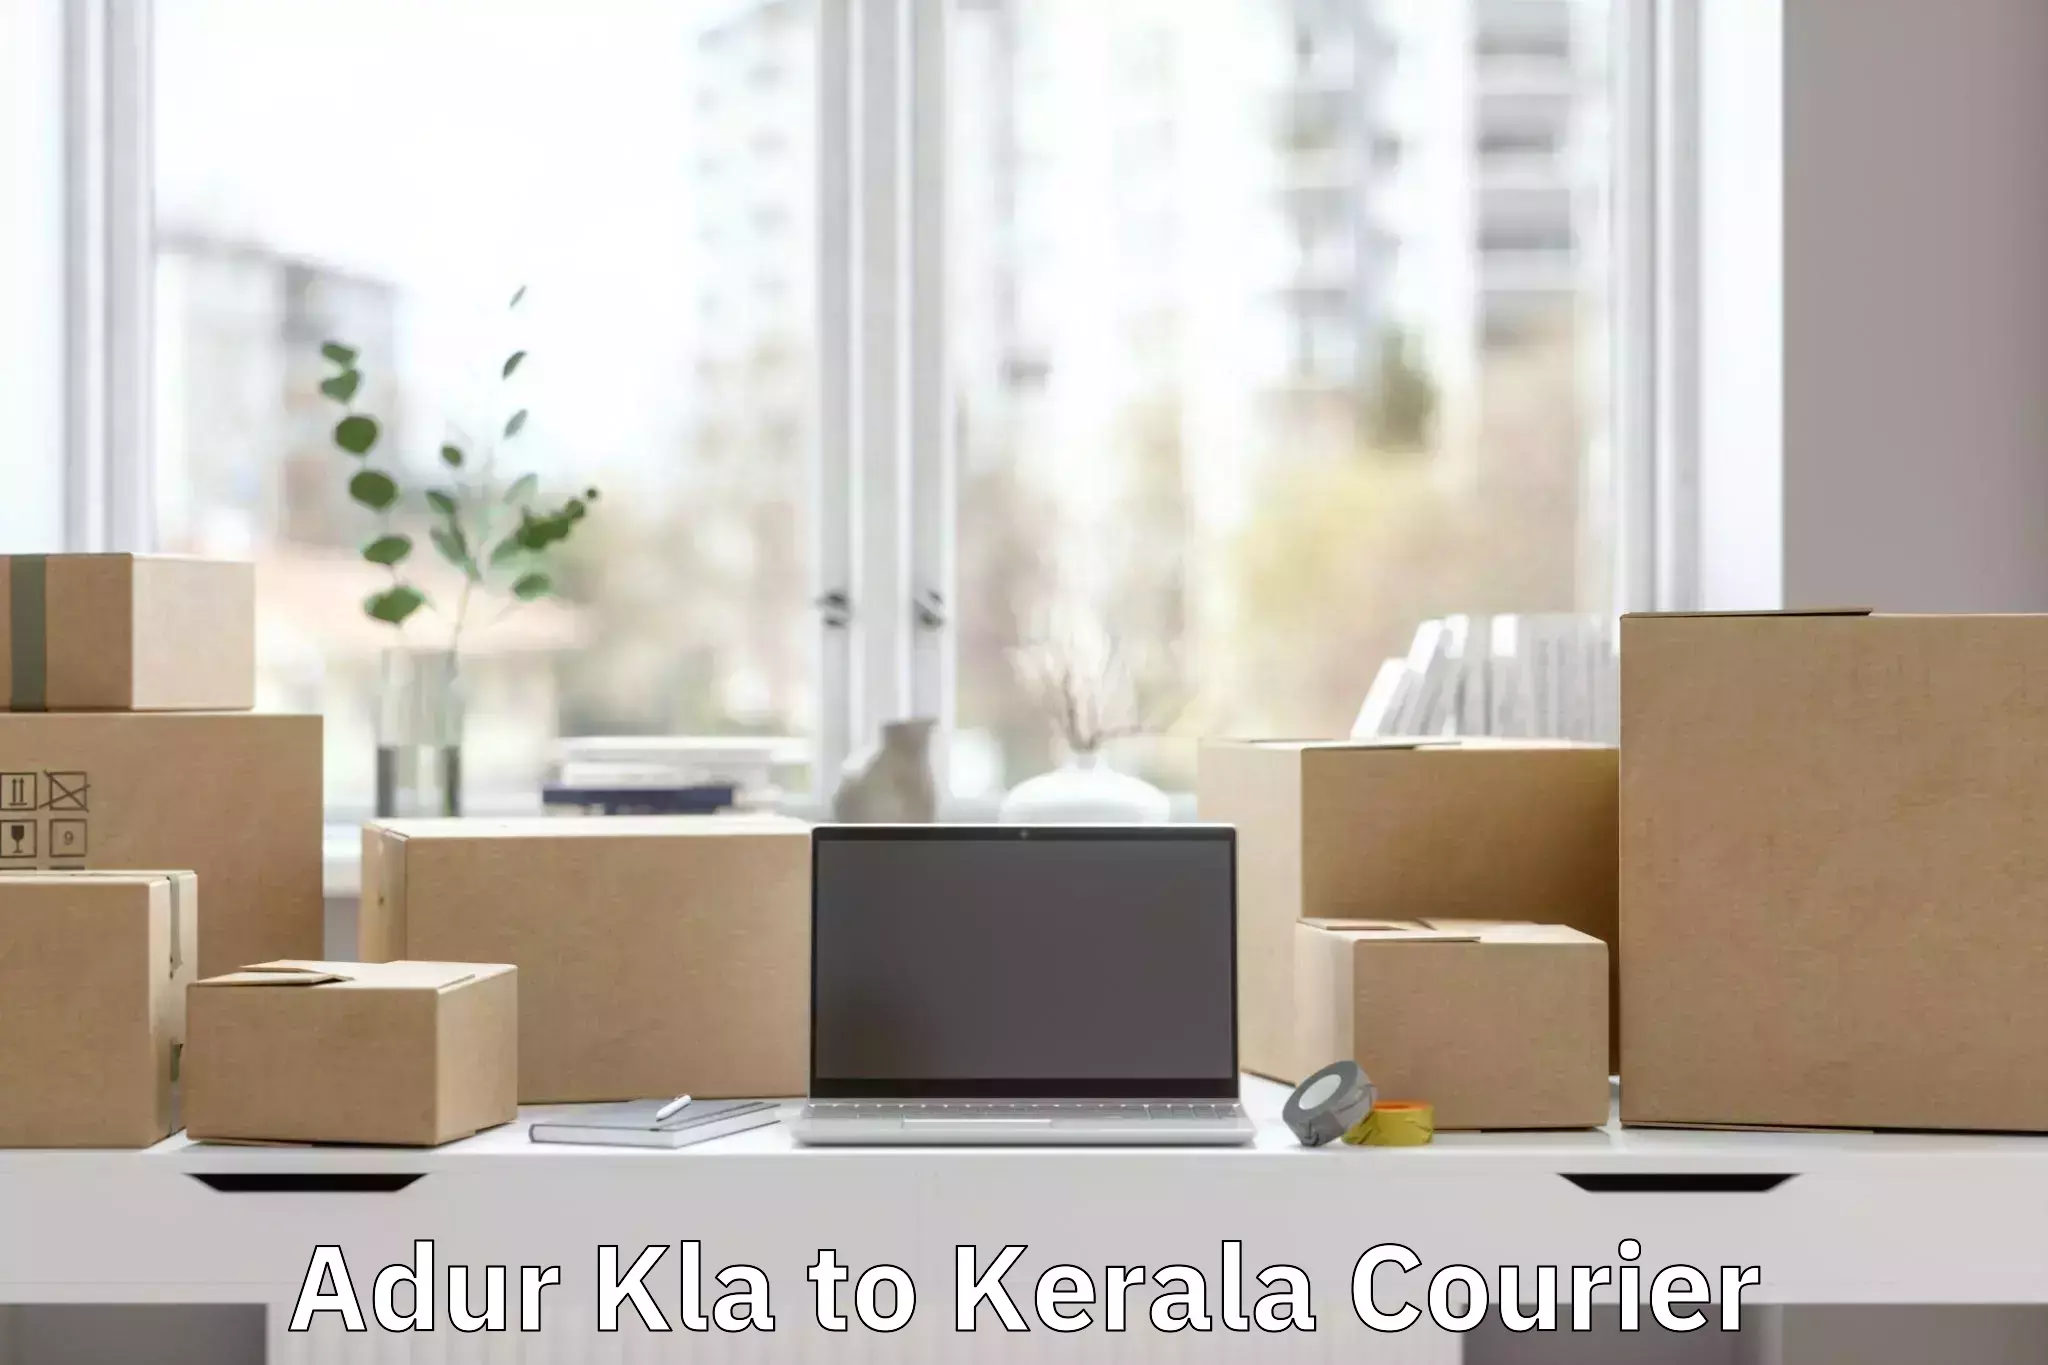 Baggage delivery estimate Adur Kla to Kerala